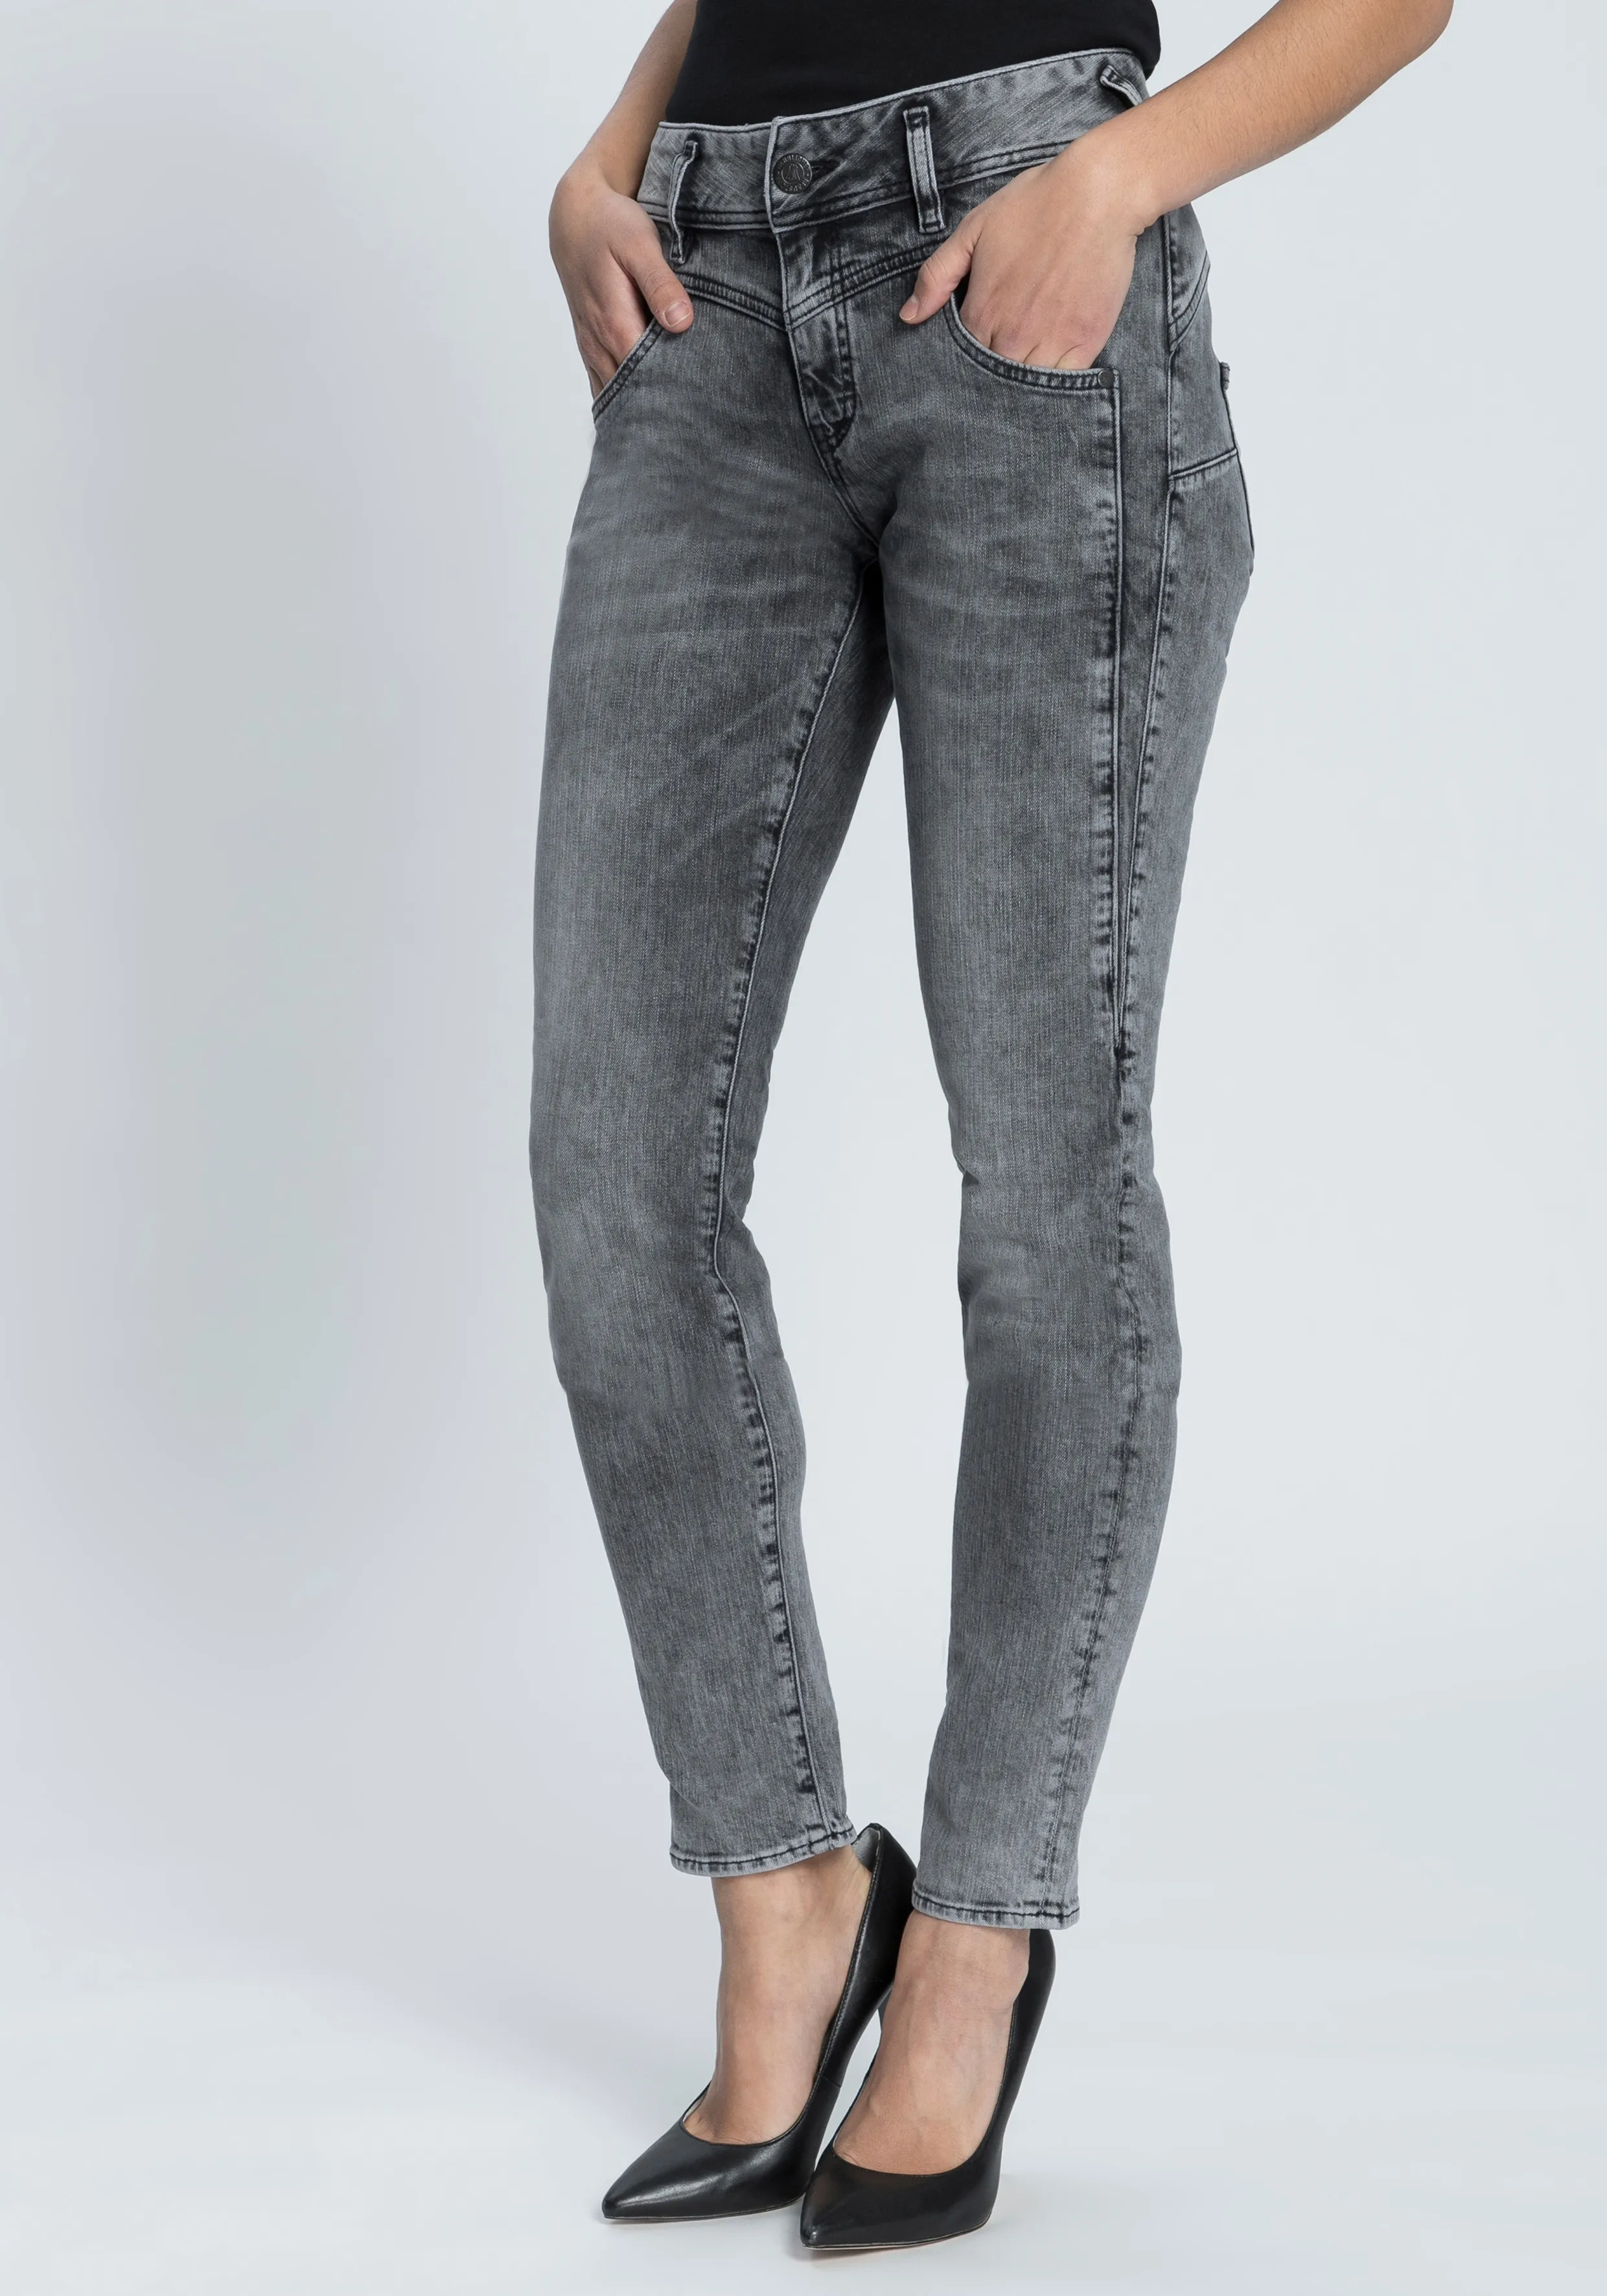 Slim-fit-Jeans HERRLICHER "COSY SLIM" Gr. 26, Länge 32, grau (silent 730) Damen Jeans Röhrenjeans Shaping-Wirkung durch eingearbeiteten Keileinsatz